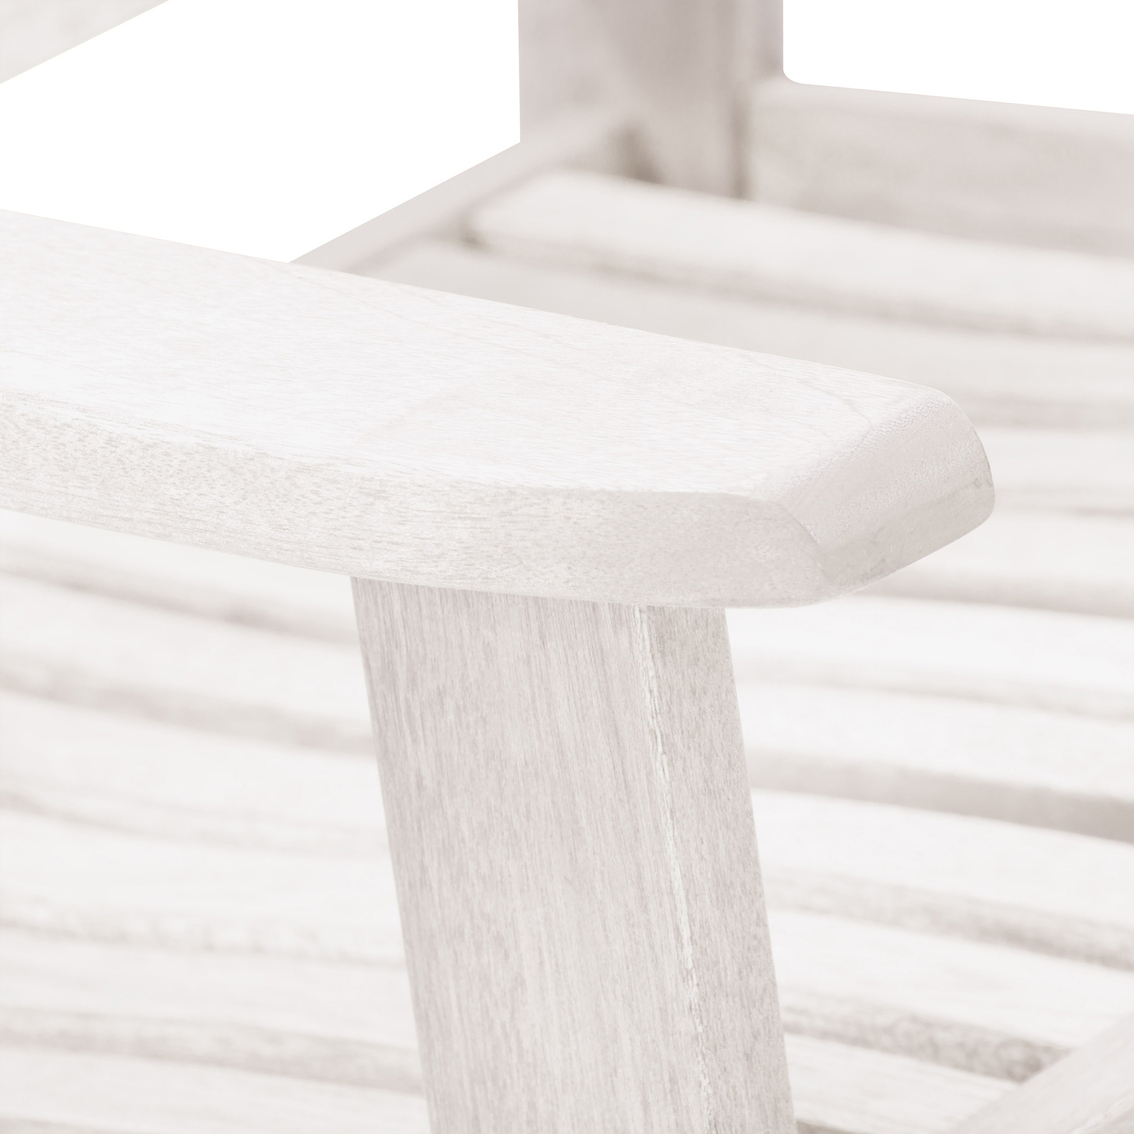 CorLiving Miramar Whitewashed Hardwood Outdoor Rocking Chair - Image 6 of 8